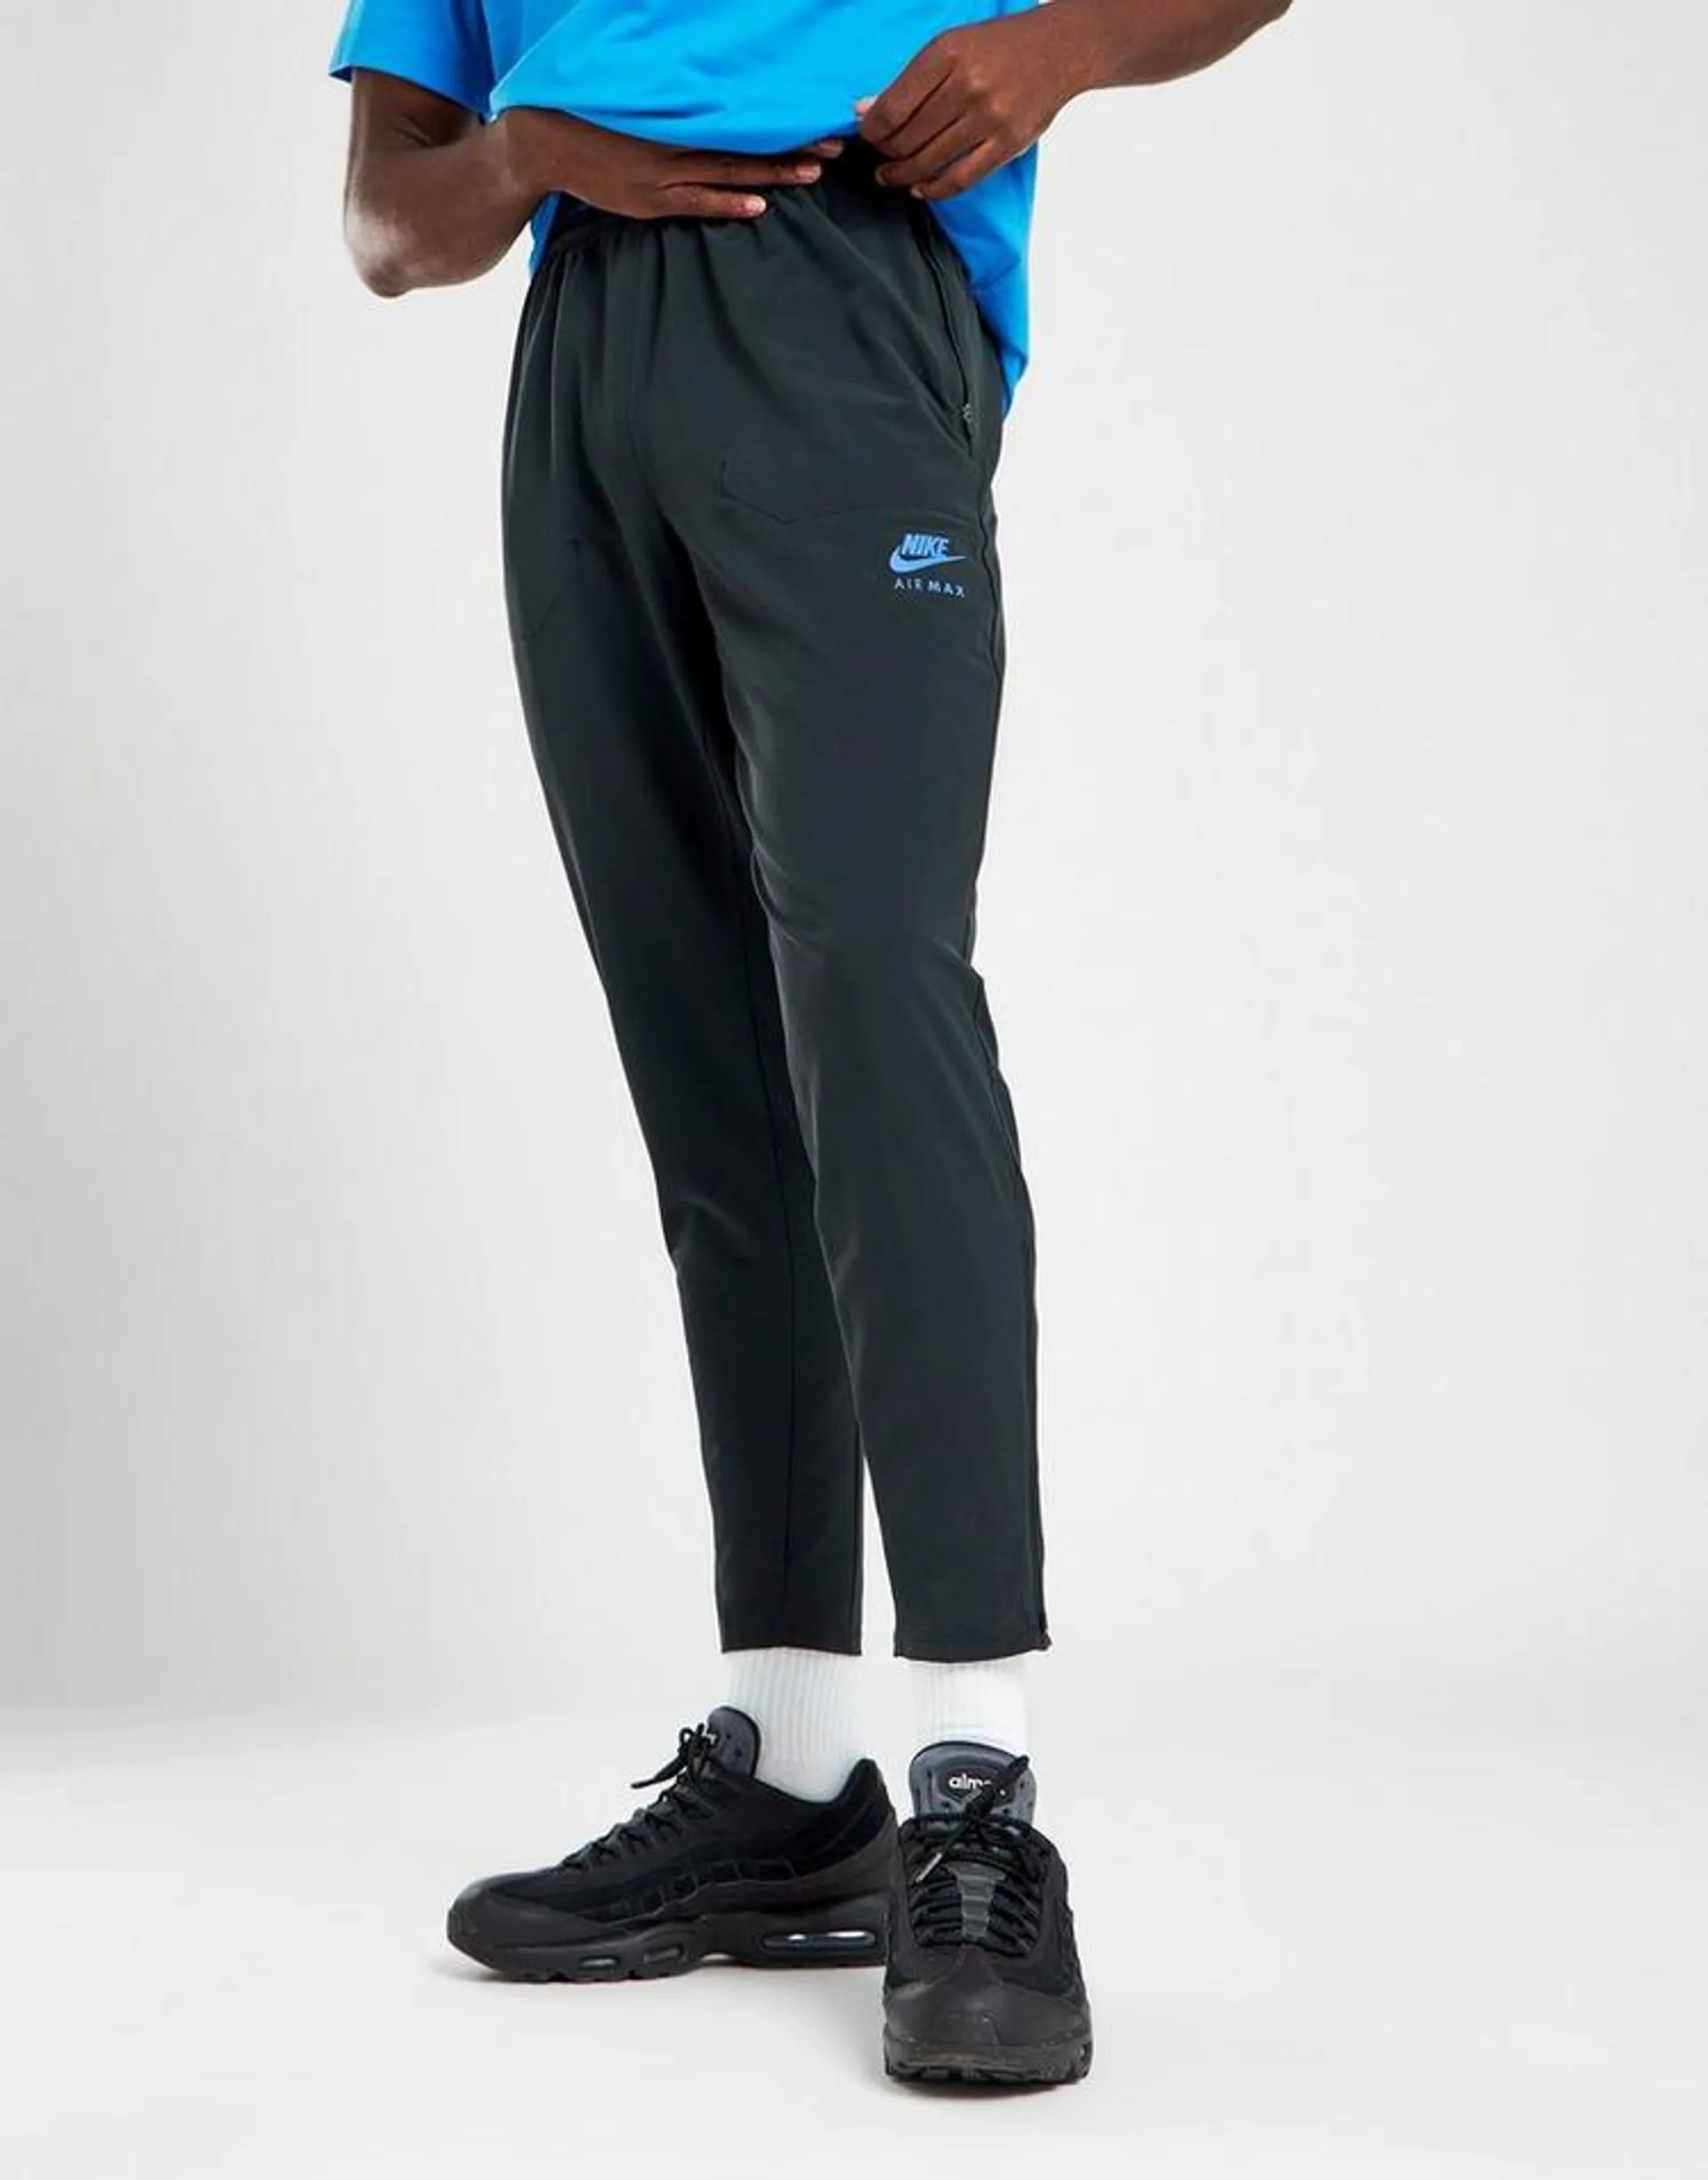 Nike Air Max Woven Pants